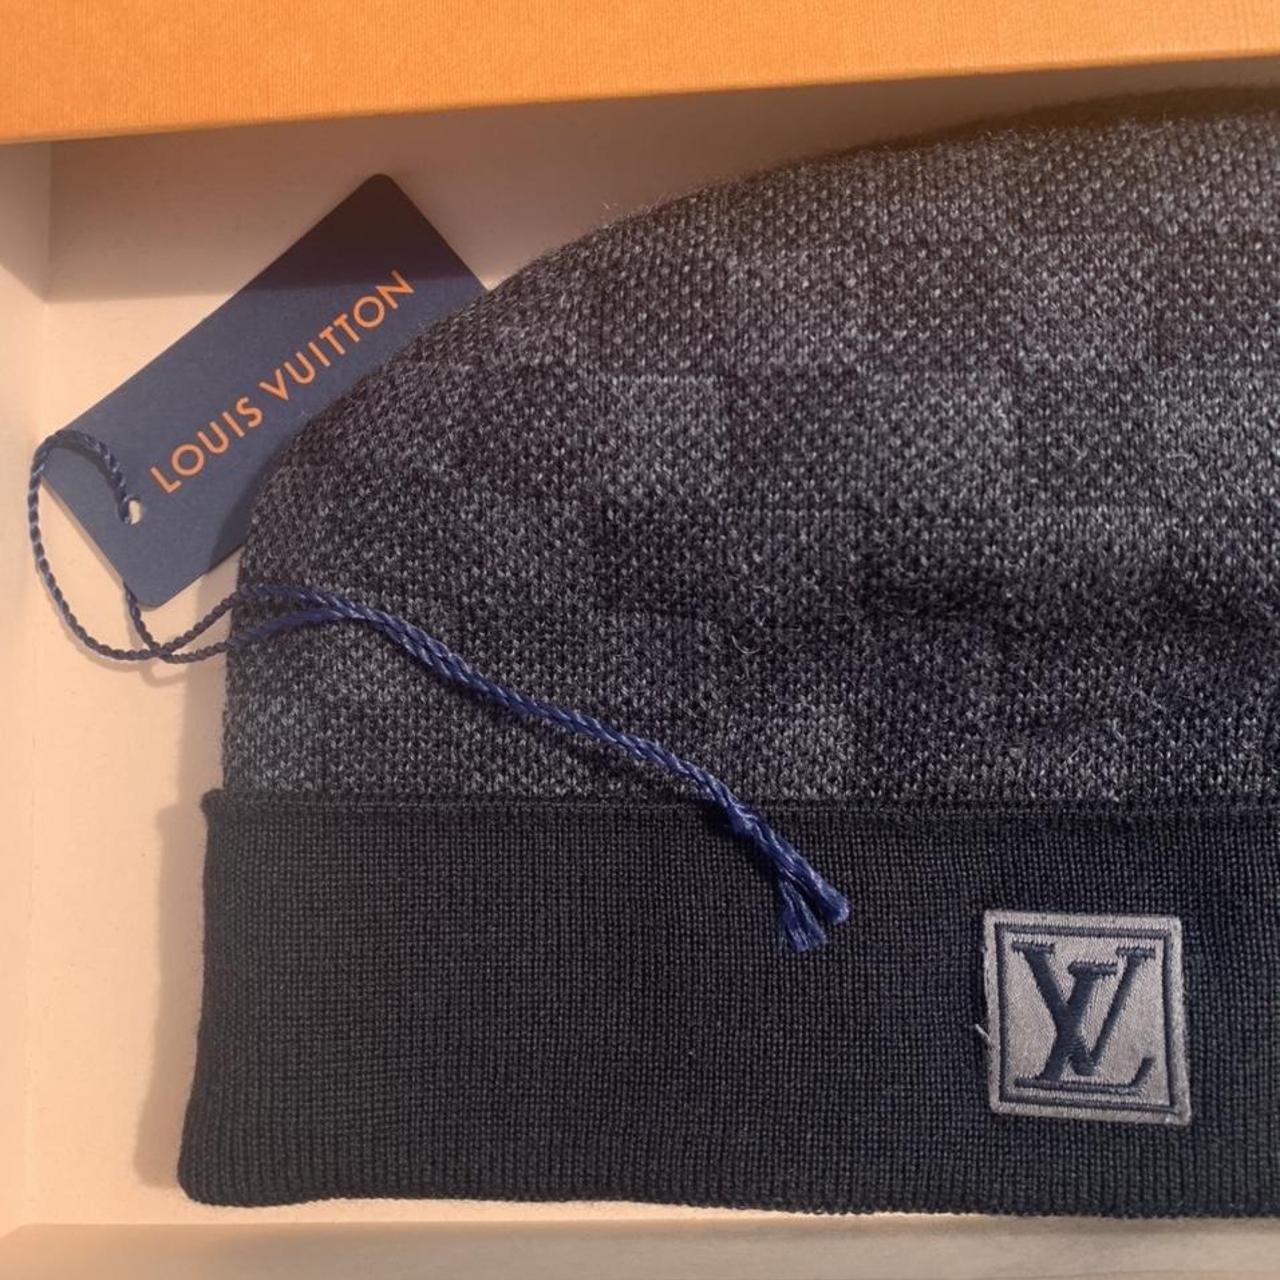 Louis Vuitton Beanie Hat #louisvuitton #hat #designer - Depop